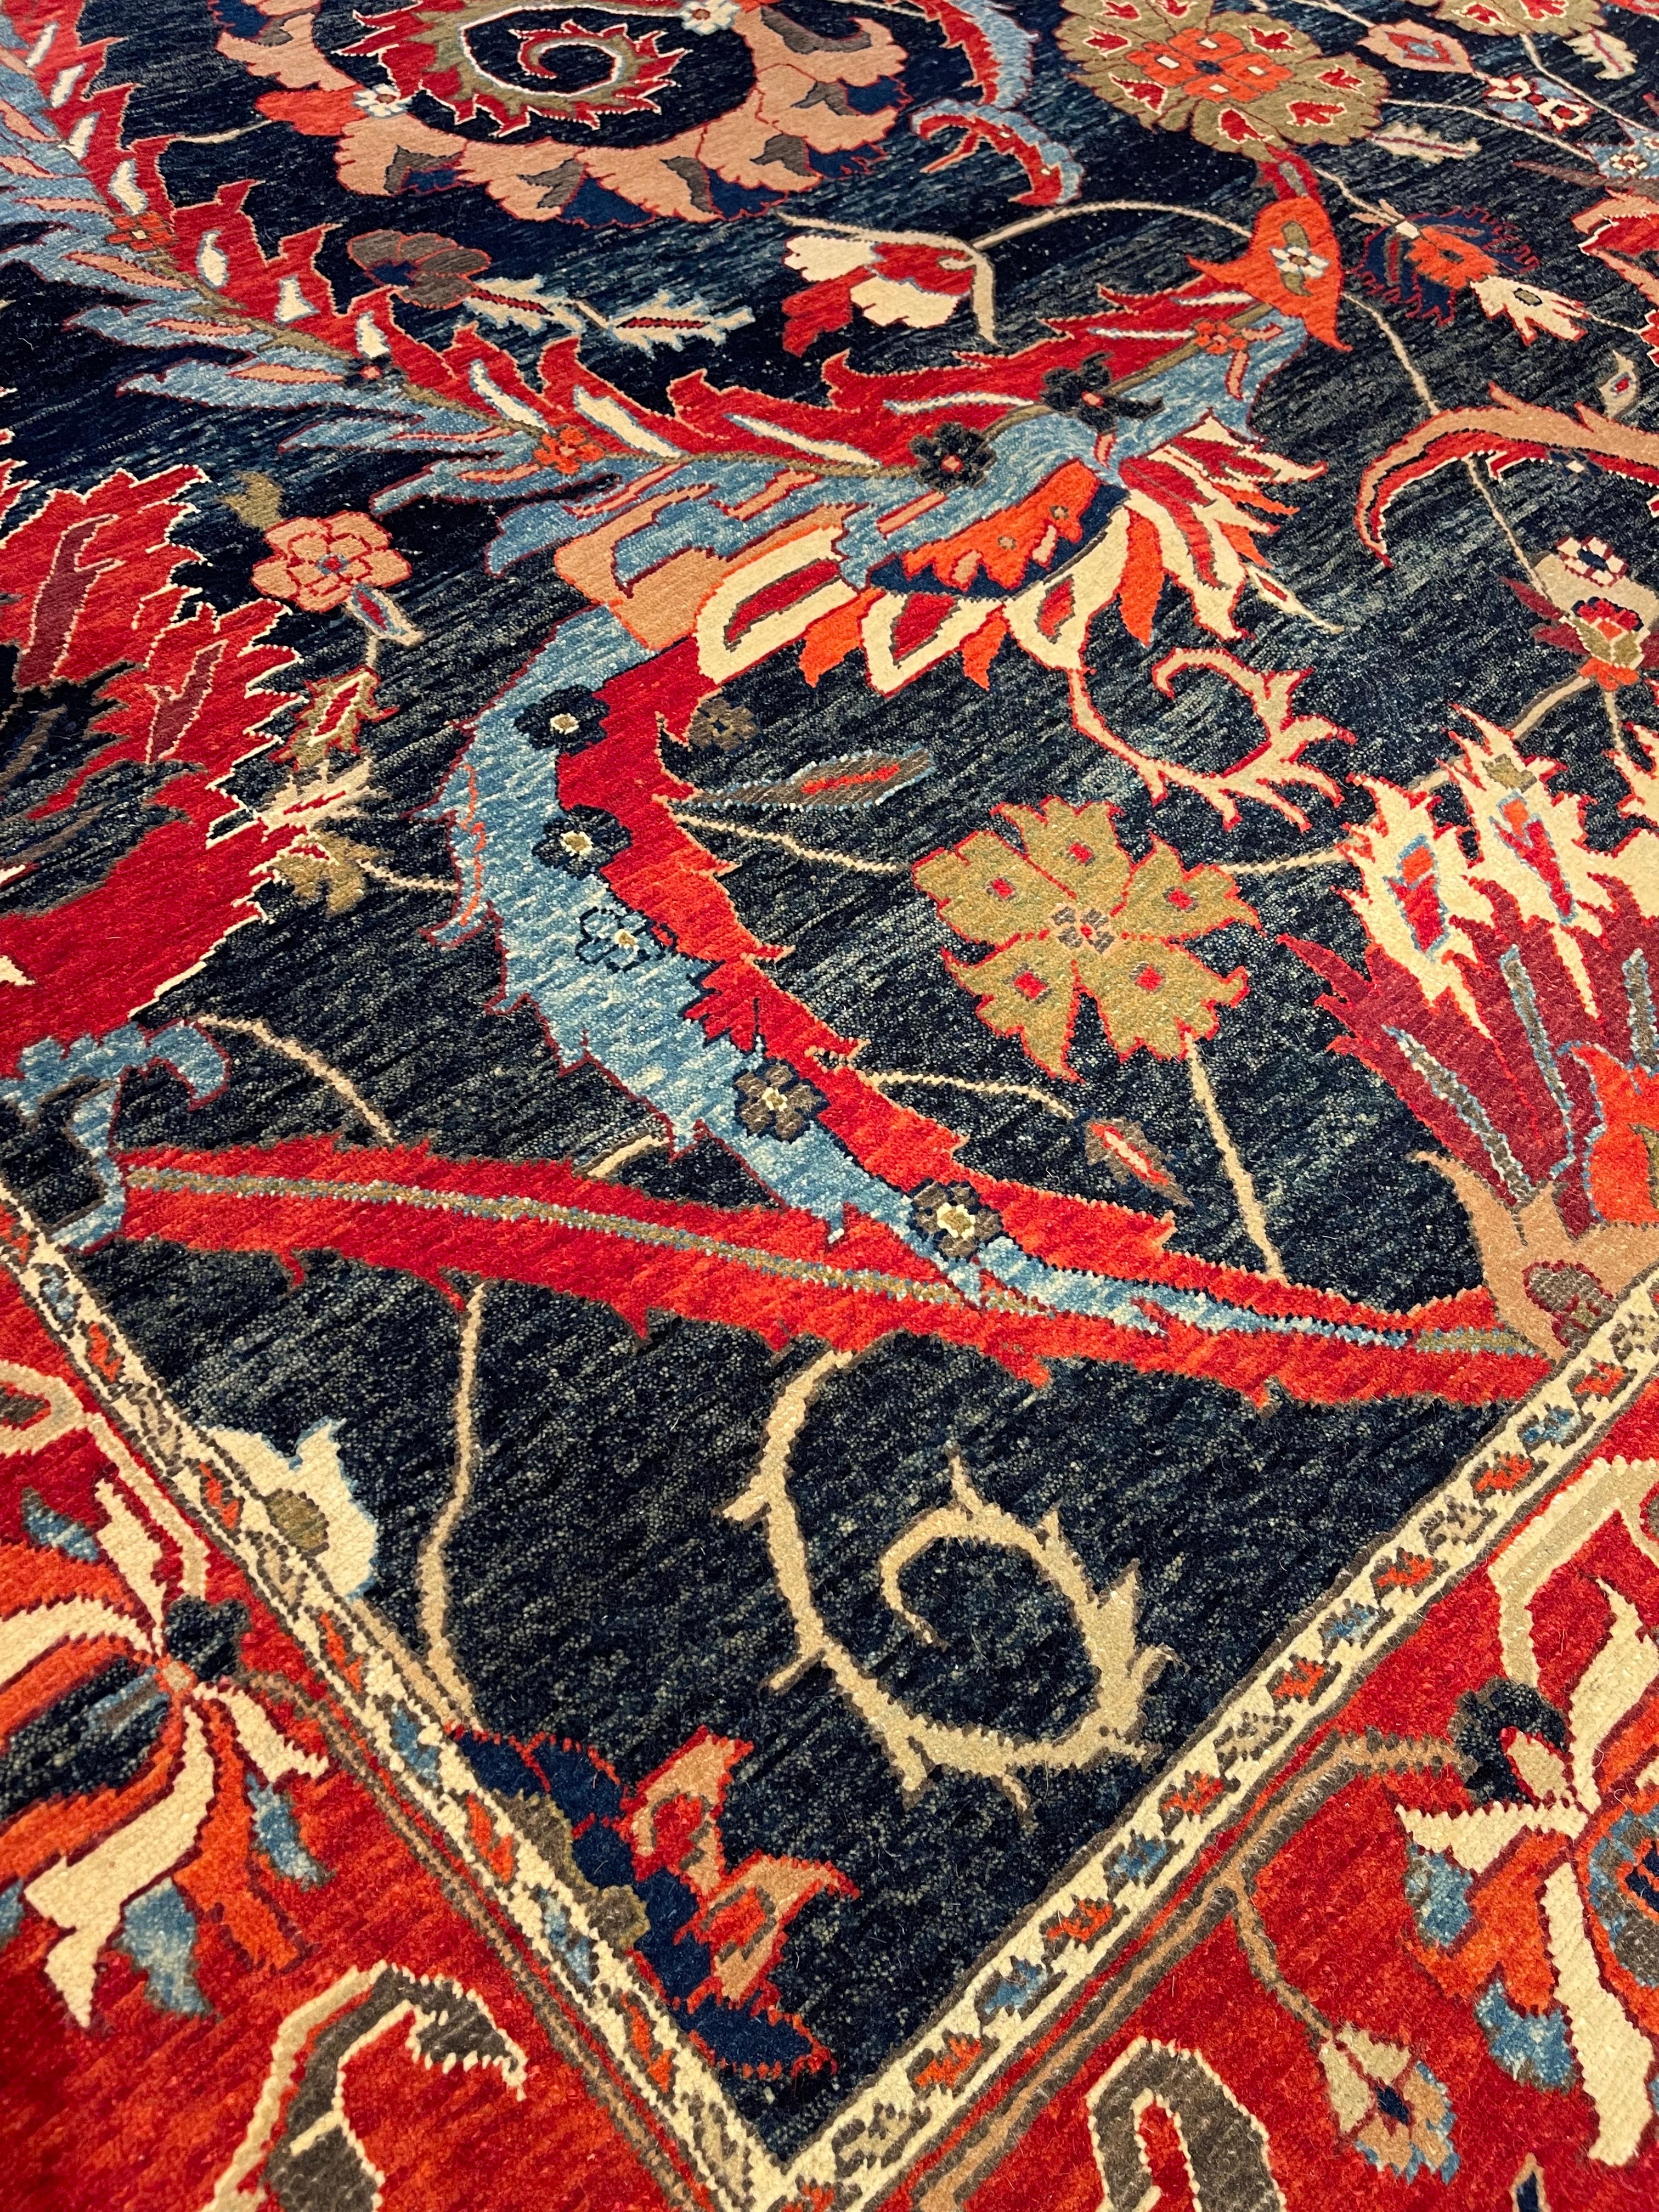 La source du tapis provient du livre Museo Calouste Gulbenkian, imprimé par le Musée Gulbenkian de Lisbonne, en 2015, nr.52. Il s'agit d'un tapis de style vase-technique conçu au XVIIe siècle dans la région de Kerman, en Perse. Au XVIe siècle, dans